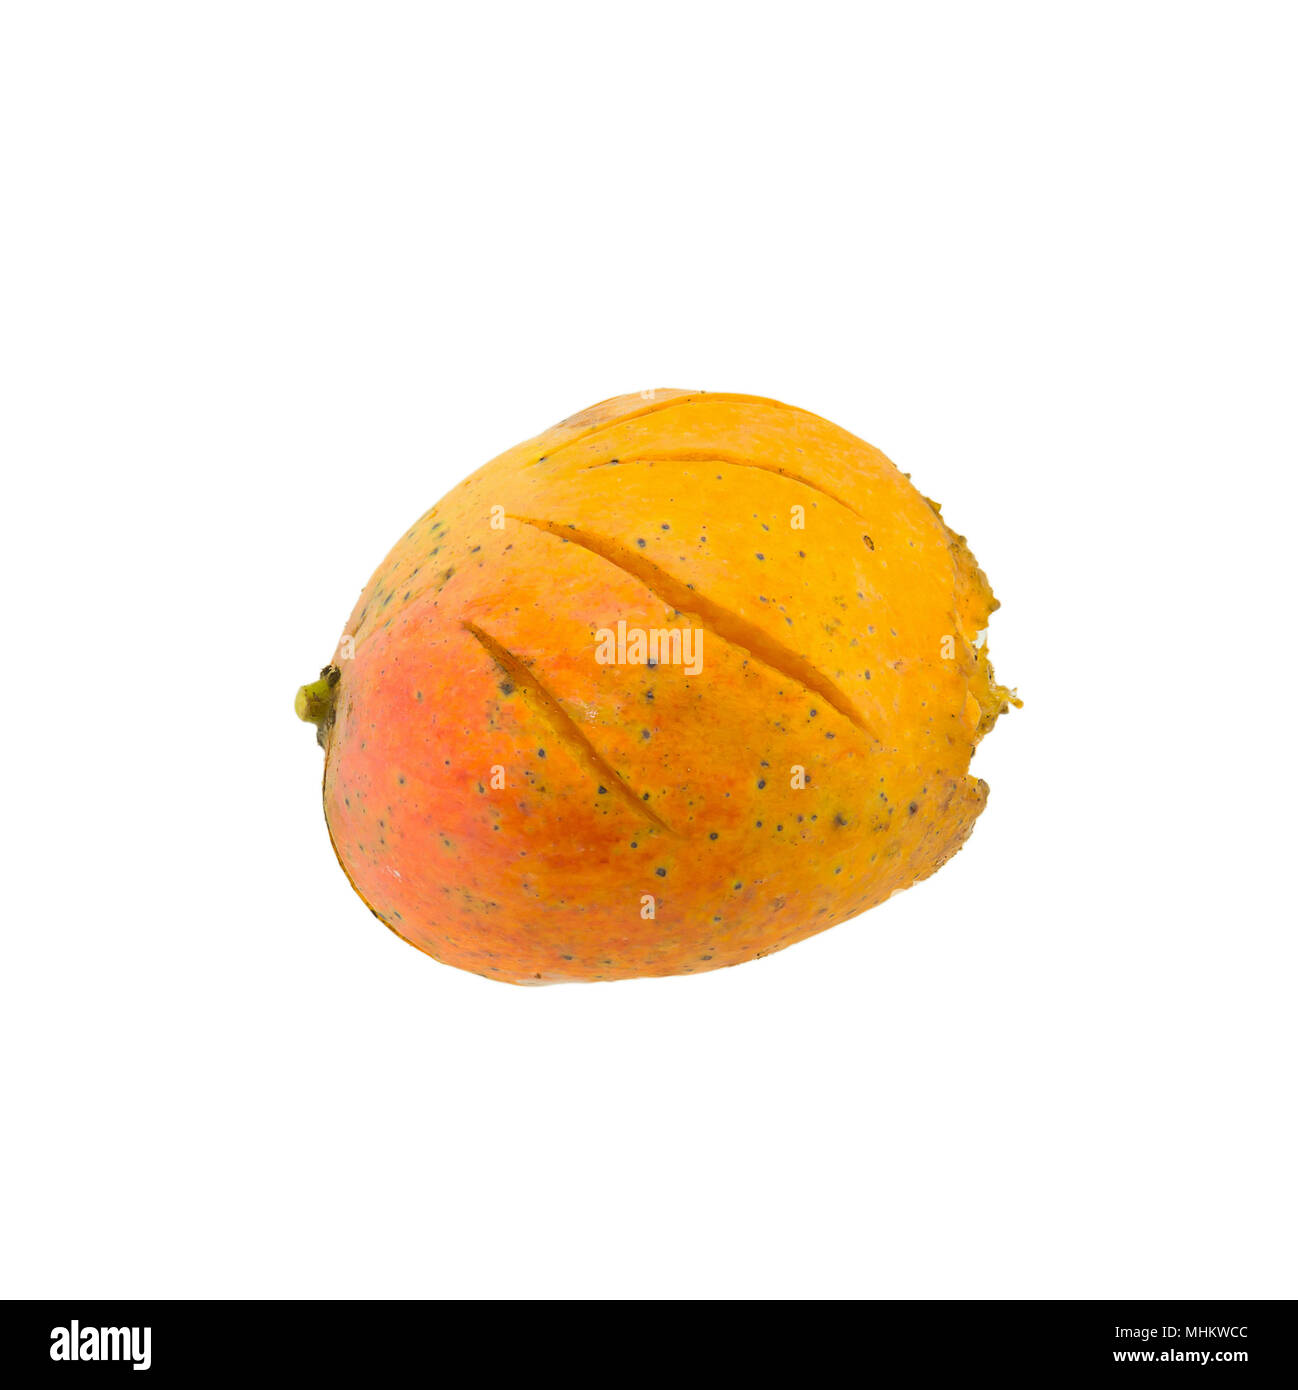 Yellow Rotten Mango Fruit Isolated on White Stock Photo - Image of object,  damaged: 81460752